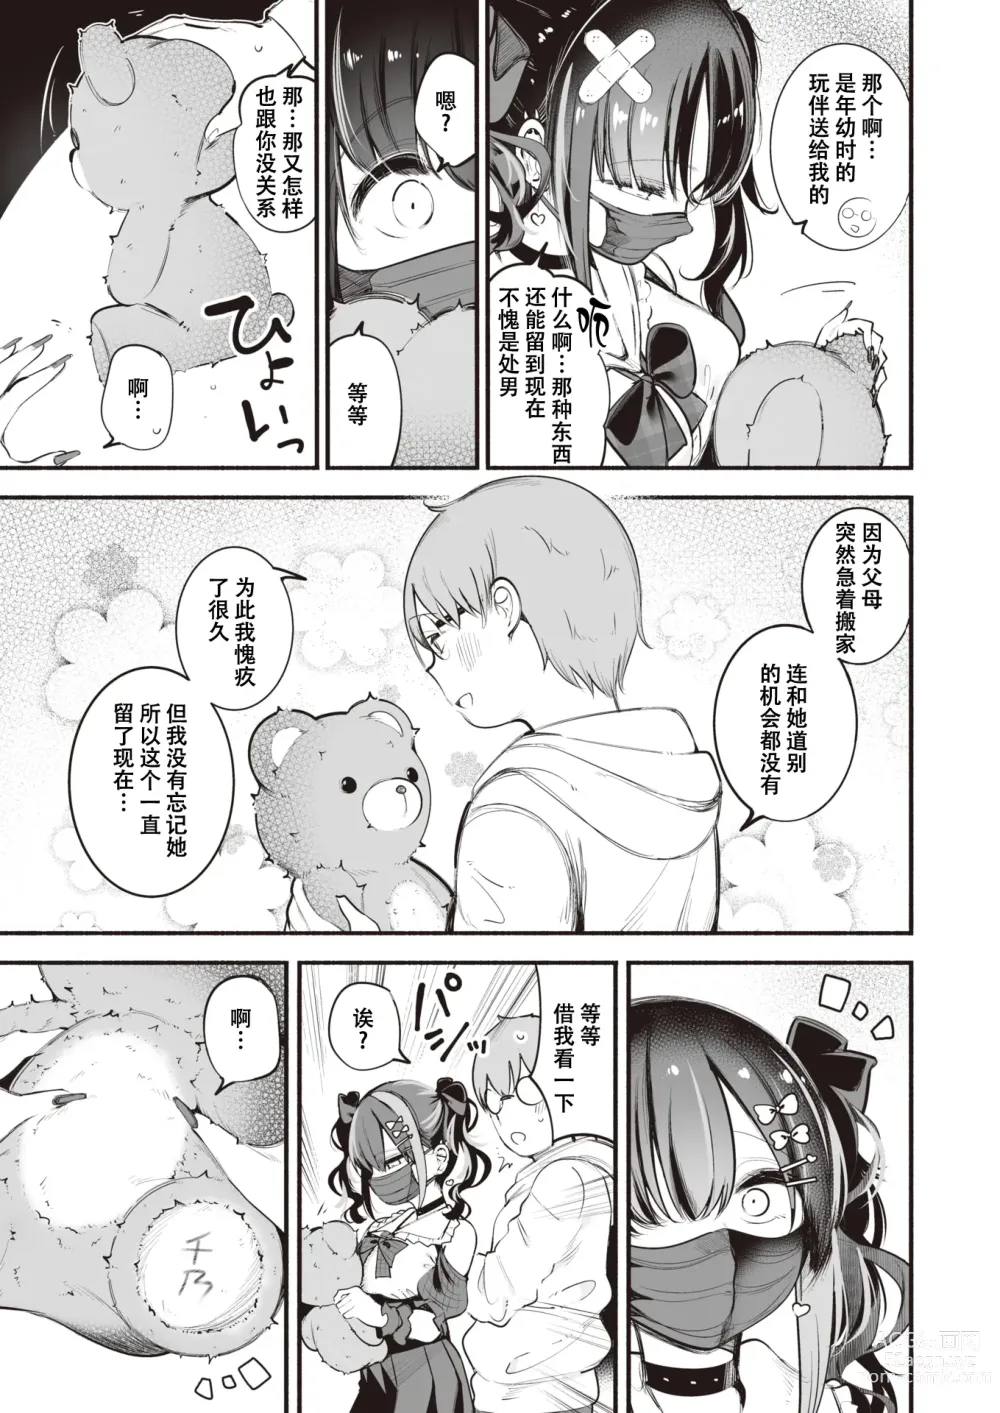 Page 7 of manga 地雷ちゃんは愛を知る